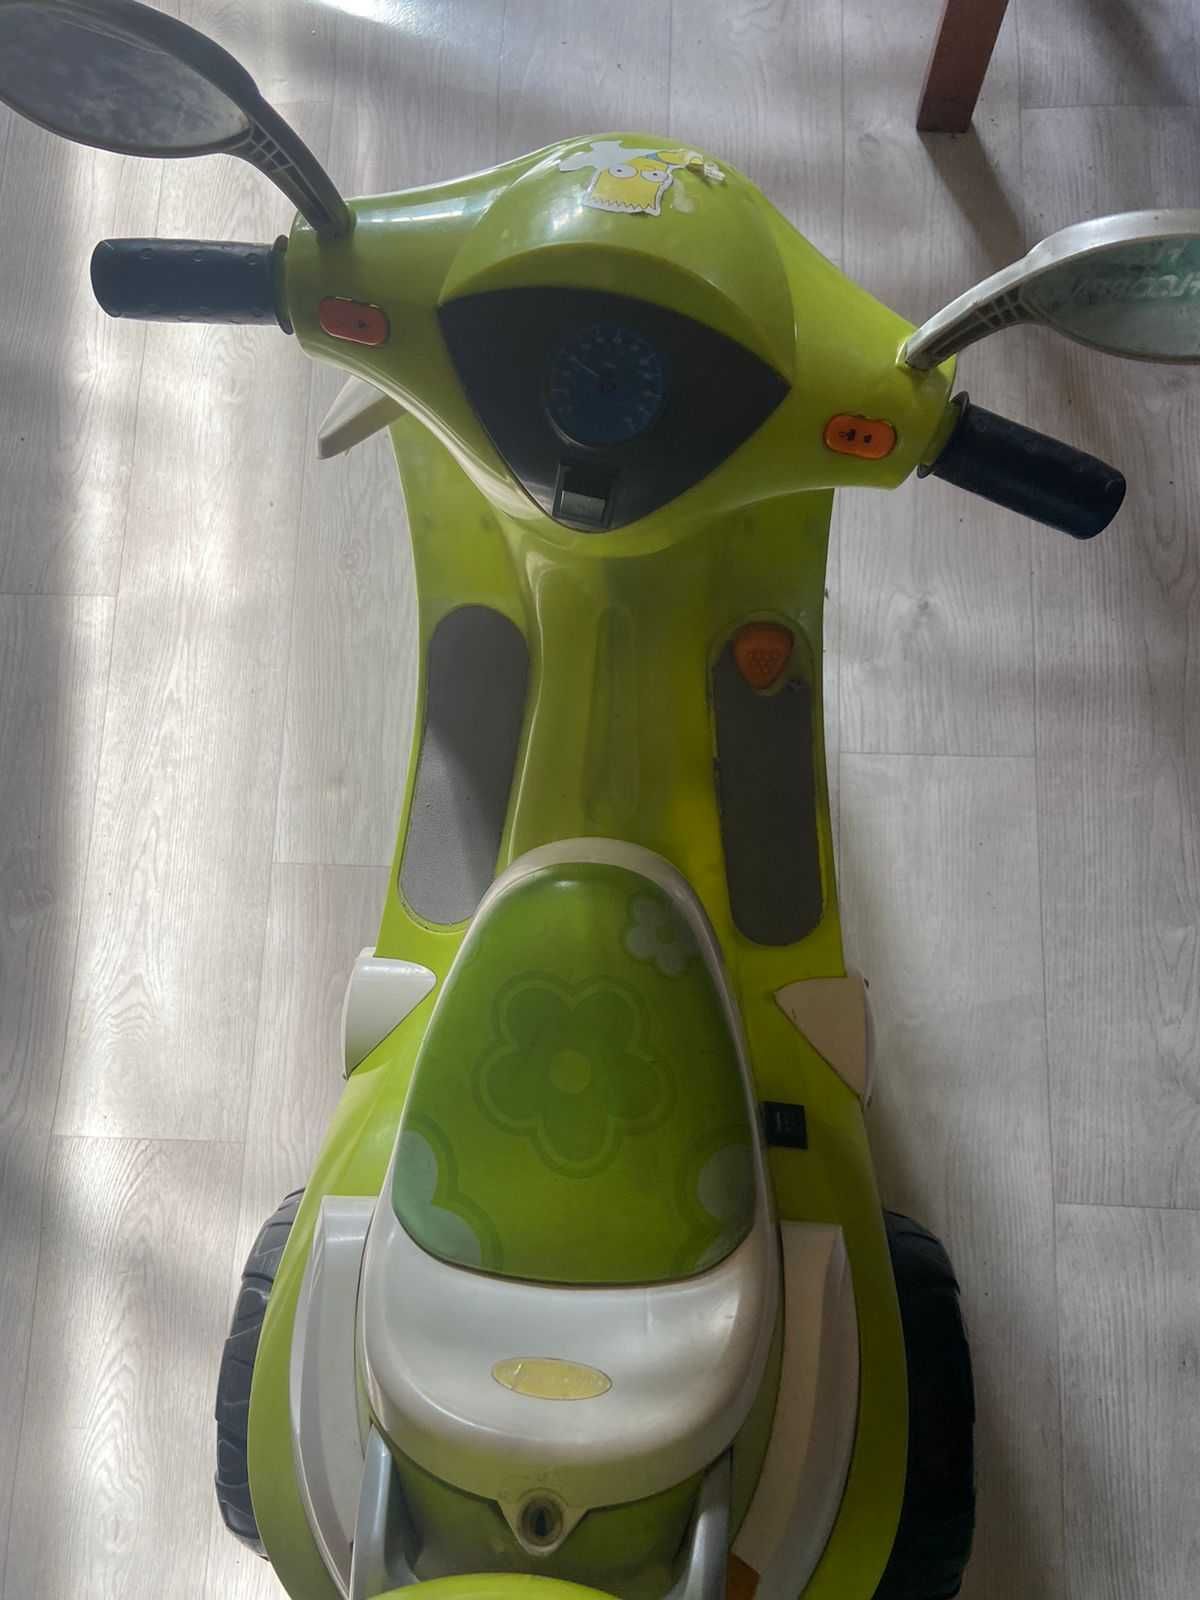 Продам детский мотоцикл